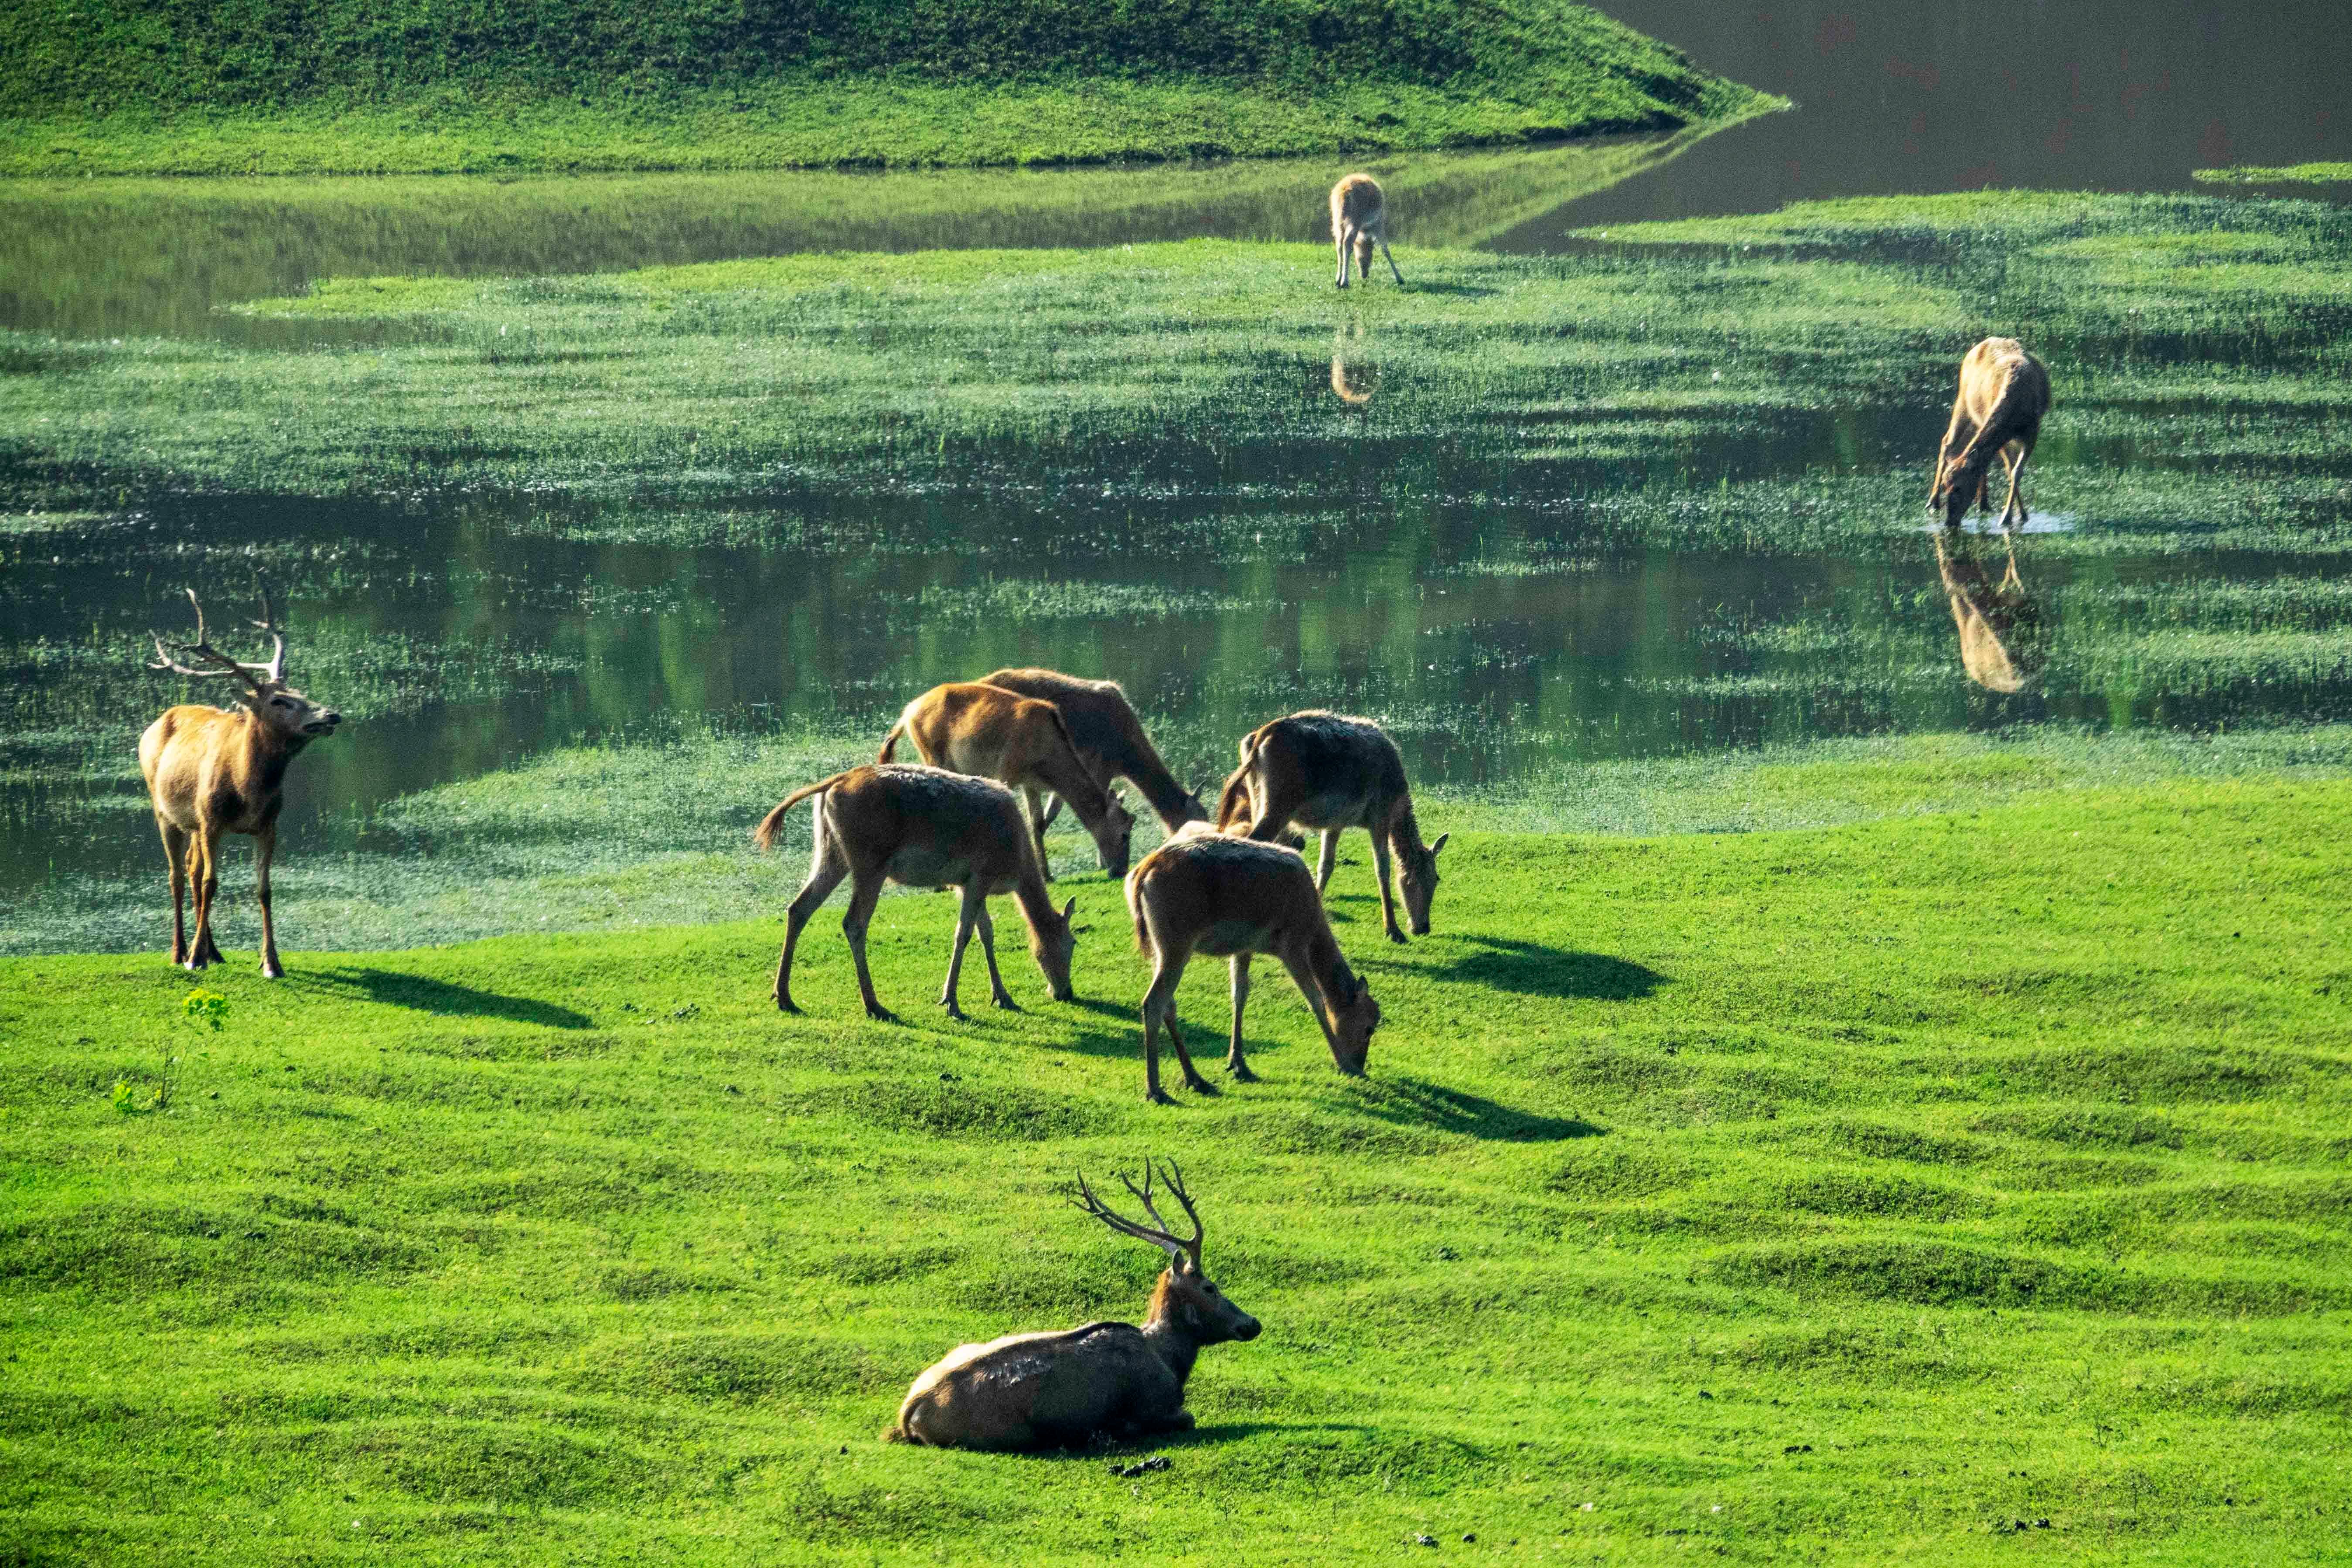 溱湖湿地公园喜添18头麋鹿宝宝